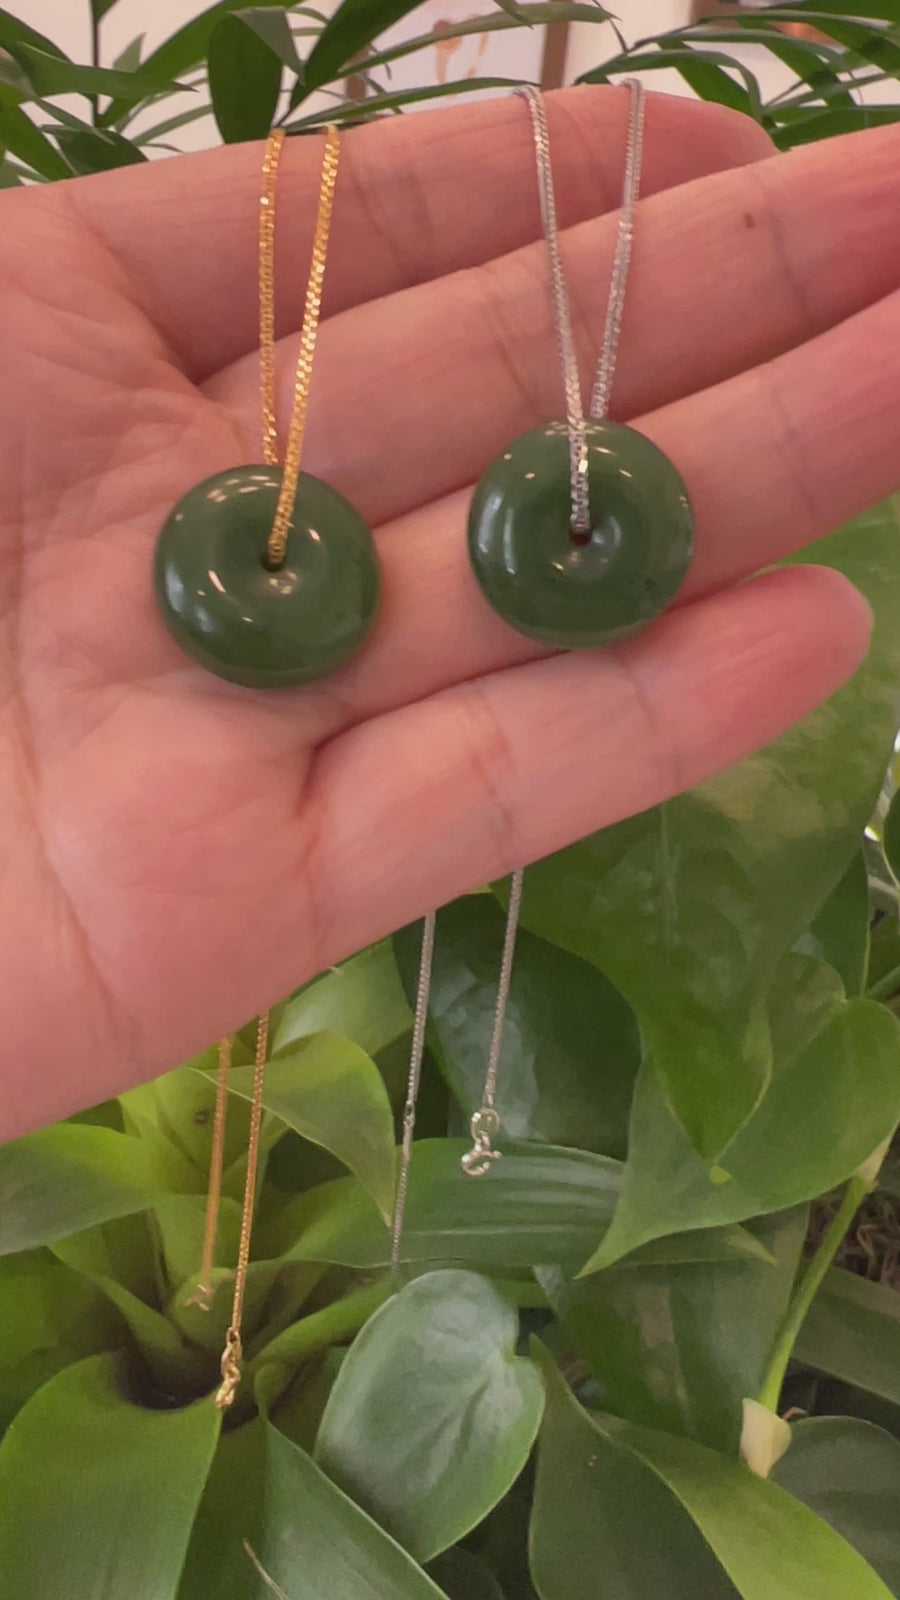 Baikalla™ "Good Luck Button" Necklace Real Green Jade Lucky KouKou Donut Pendant Necklace